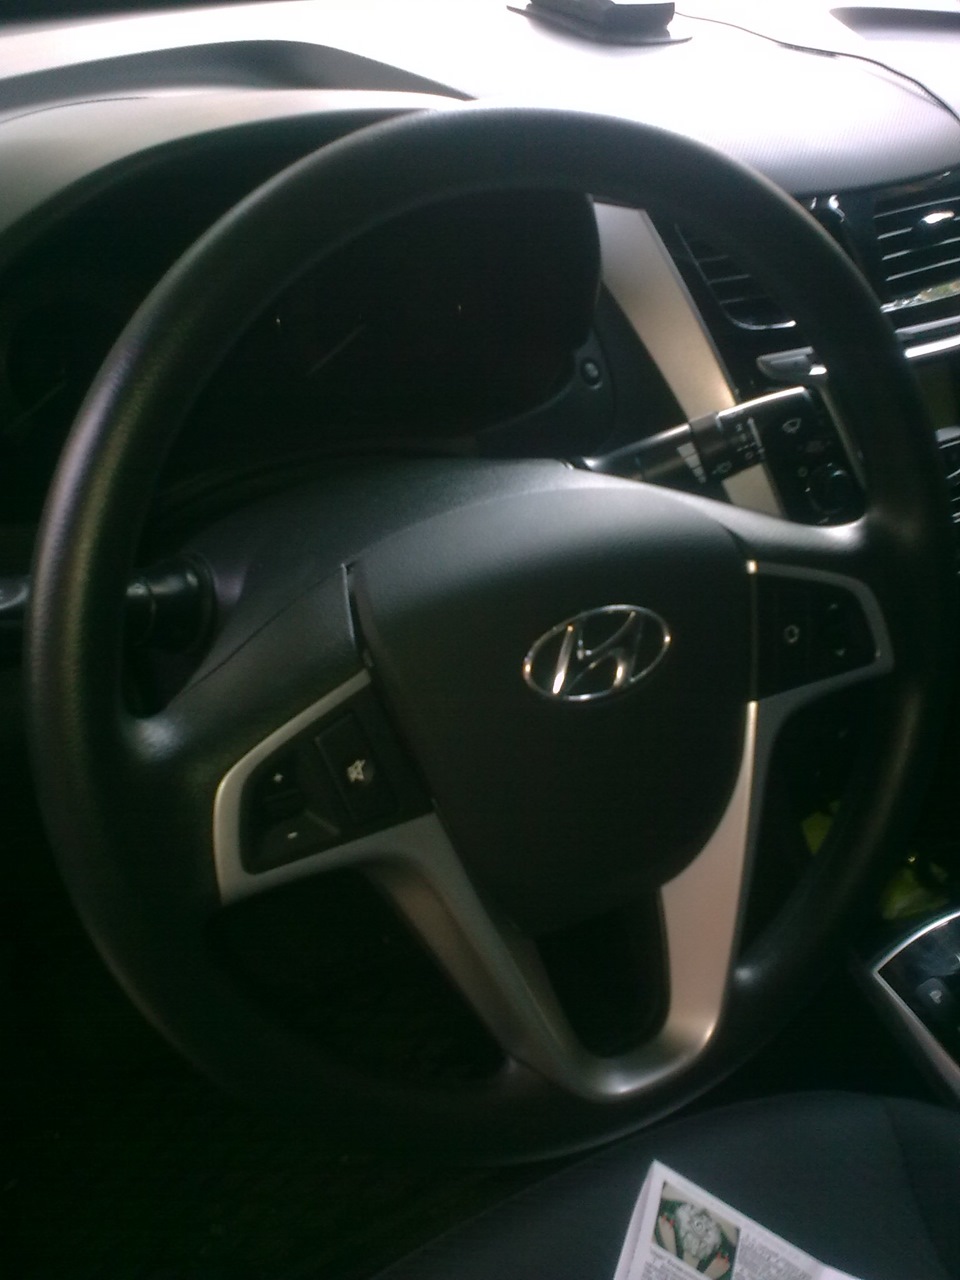 Eстанавливаем передние колеса в положение, соответствующее прямолинейному движению автомобиля Hyundai Solaris